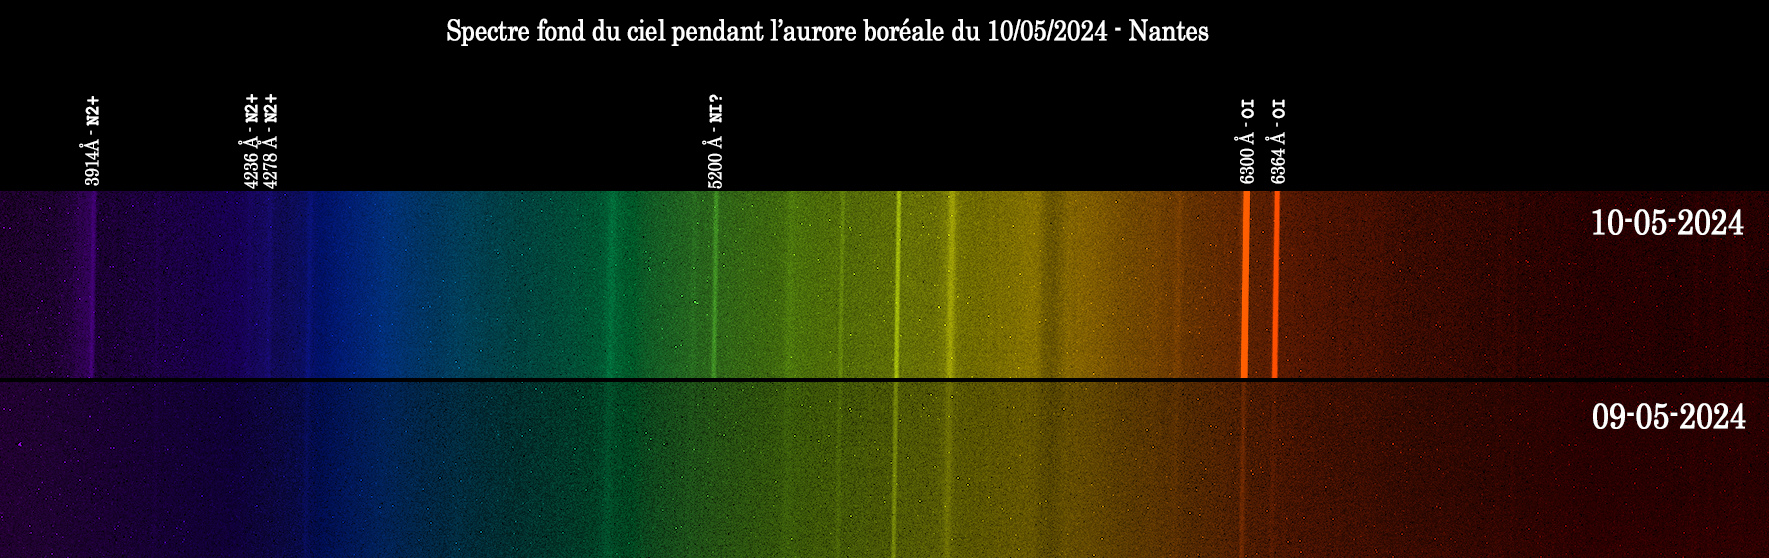 aurore.jpg.32a8116dc211dd0bb37cc5787ca9e6f1.jpg